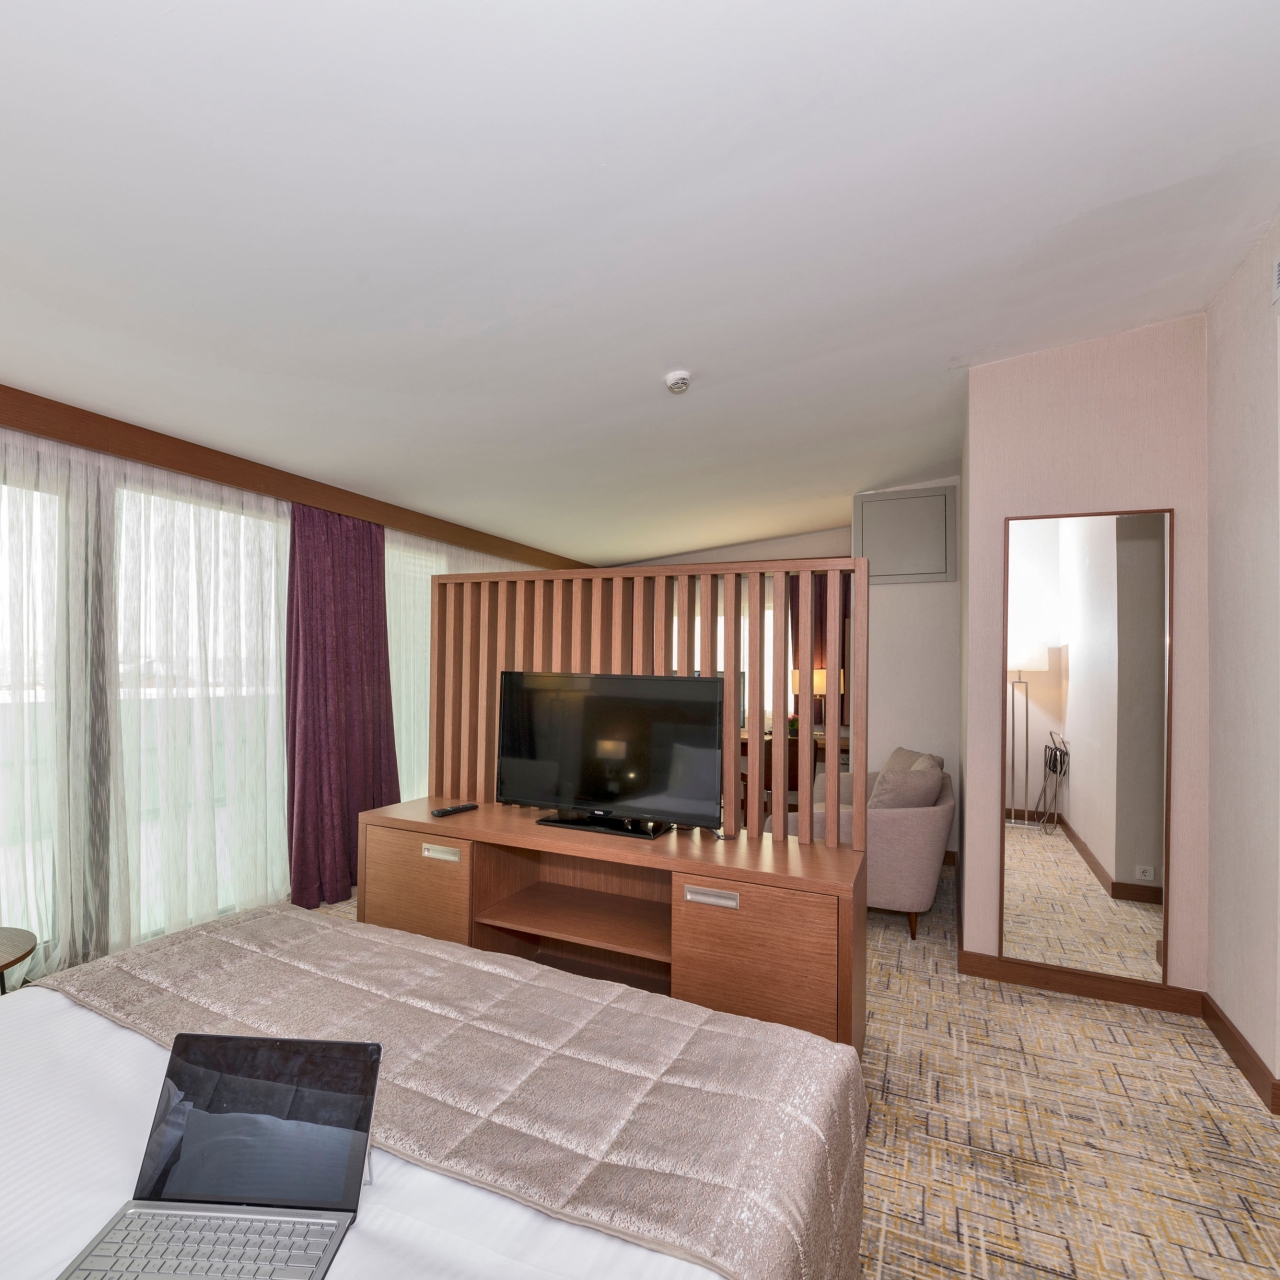 Lotte Palace Hotel Avcılar - Istanbul presso HRS con servizi gratuiti